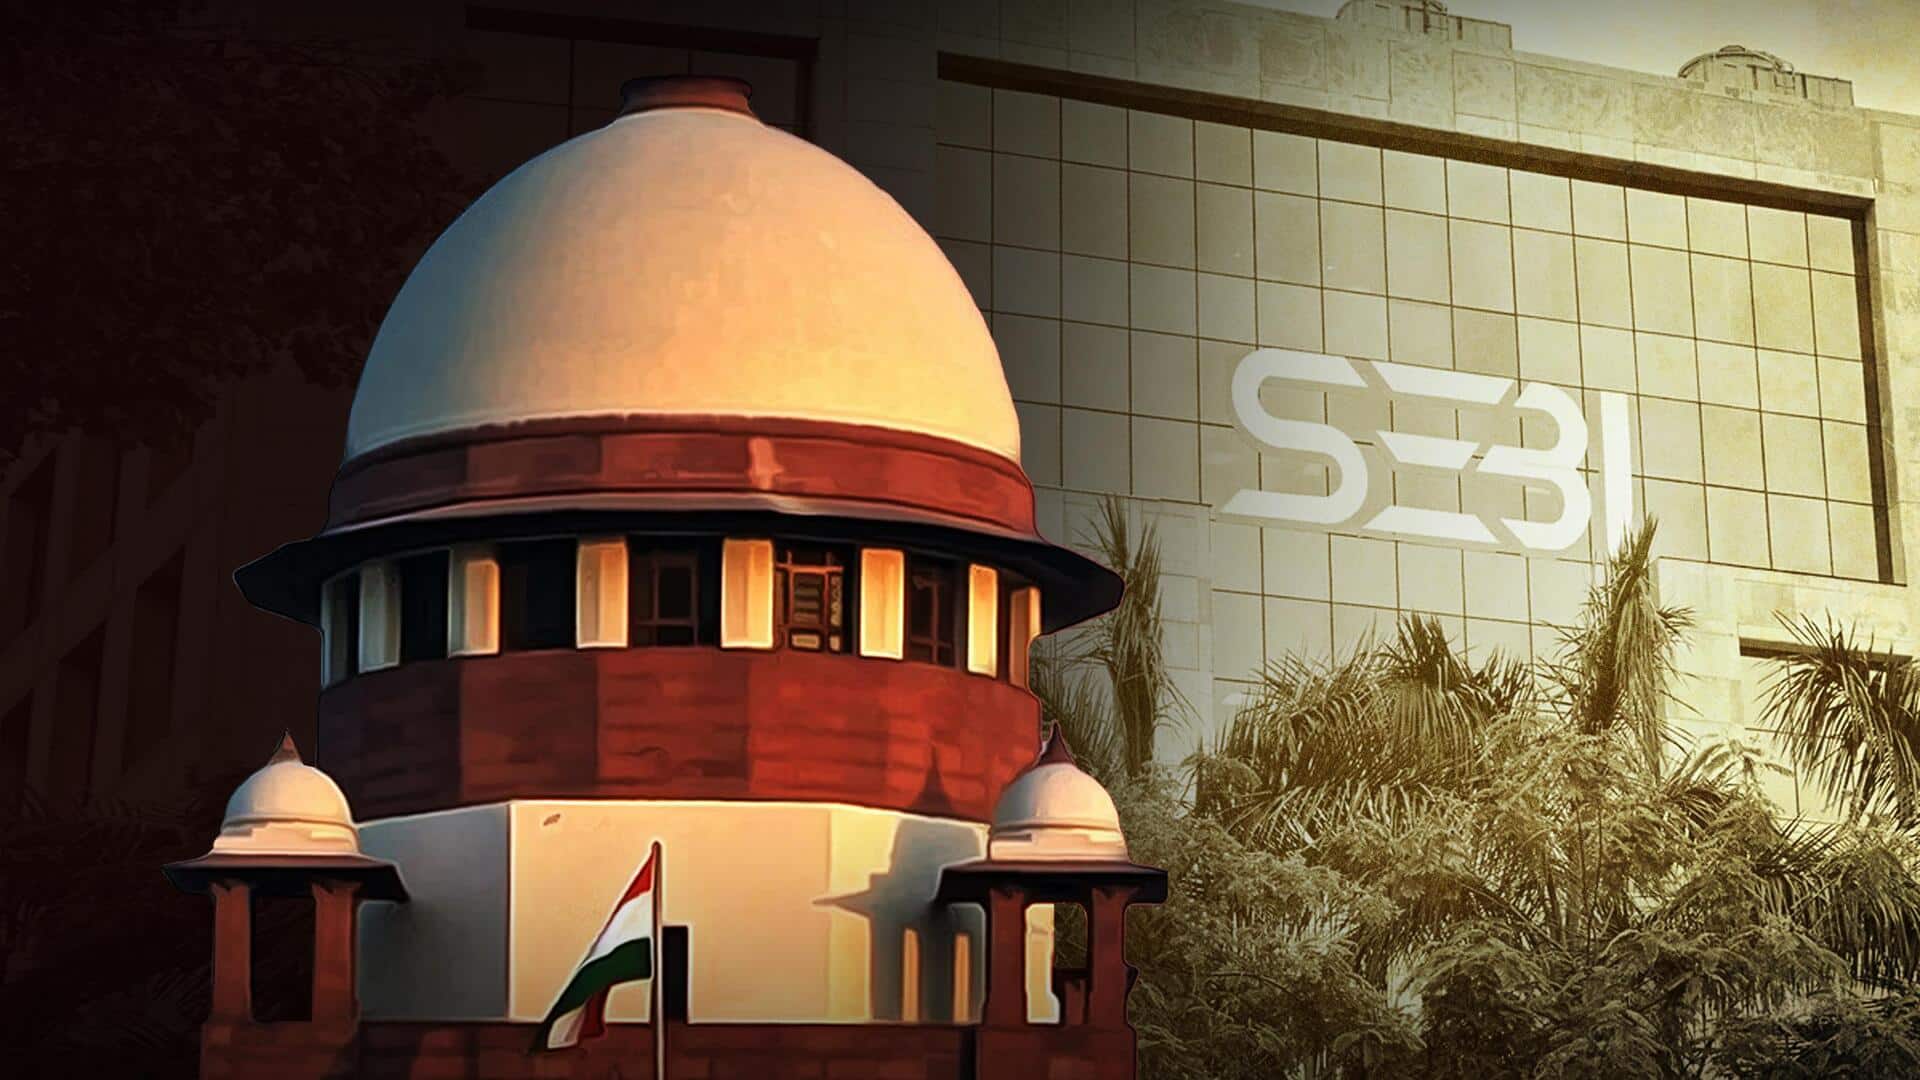 अडाणी-हिंडनबर्ग मामला: समय पर जांच पूरी न करने पर SEBI के खिलाफ सुप्रीम कोर्ट में याचिका